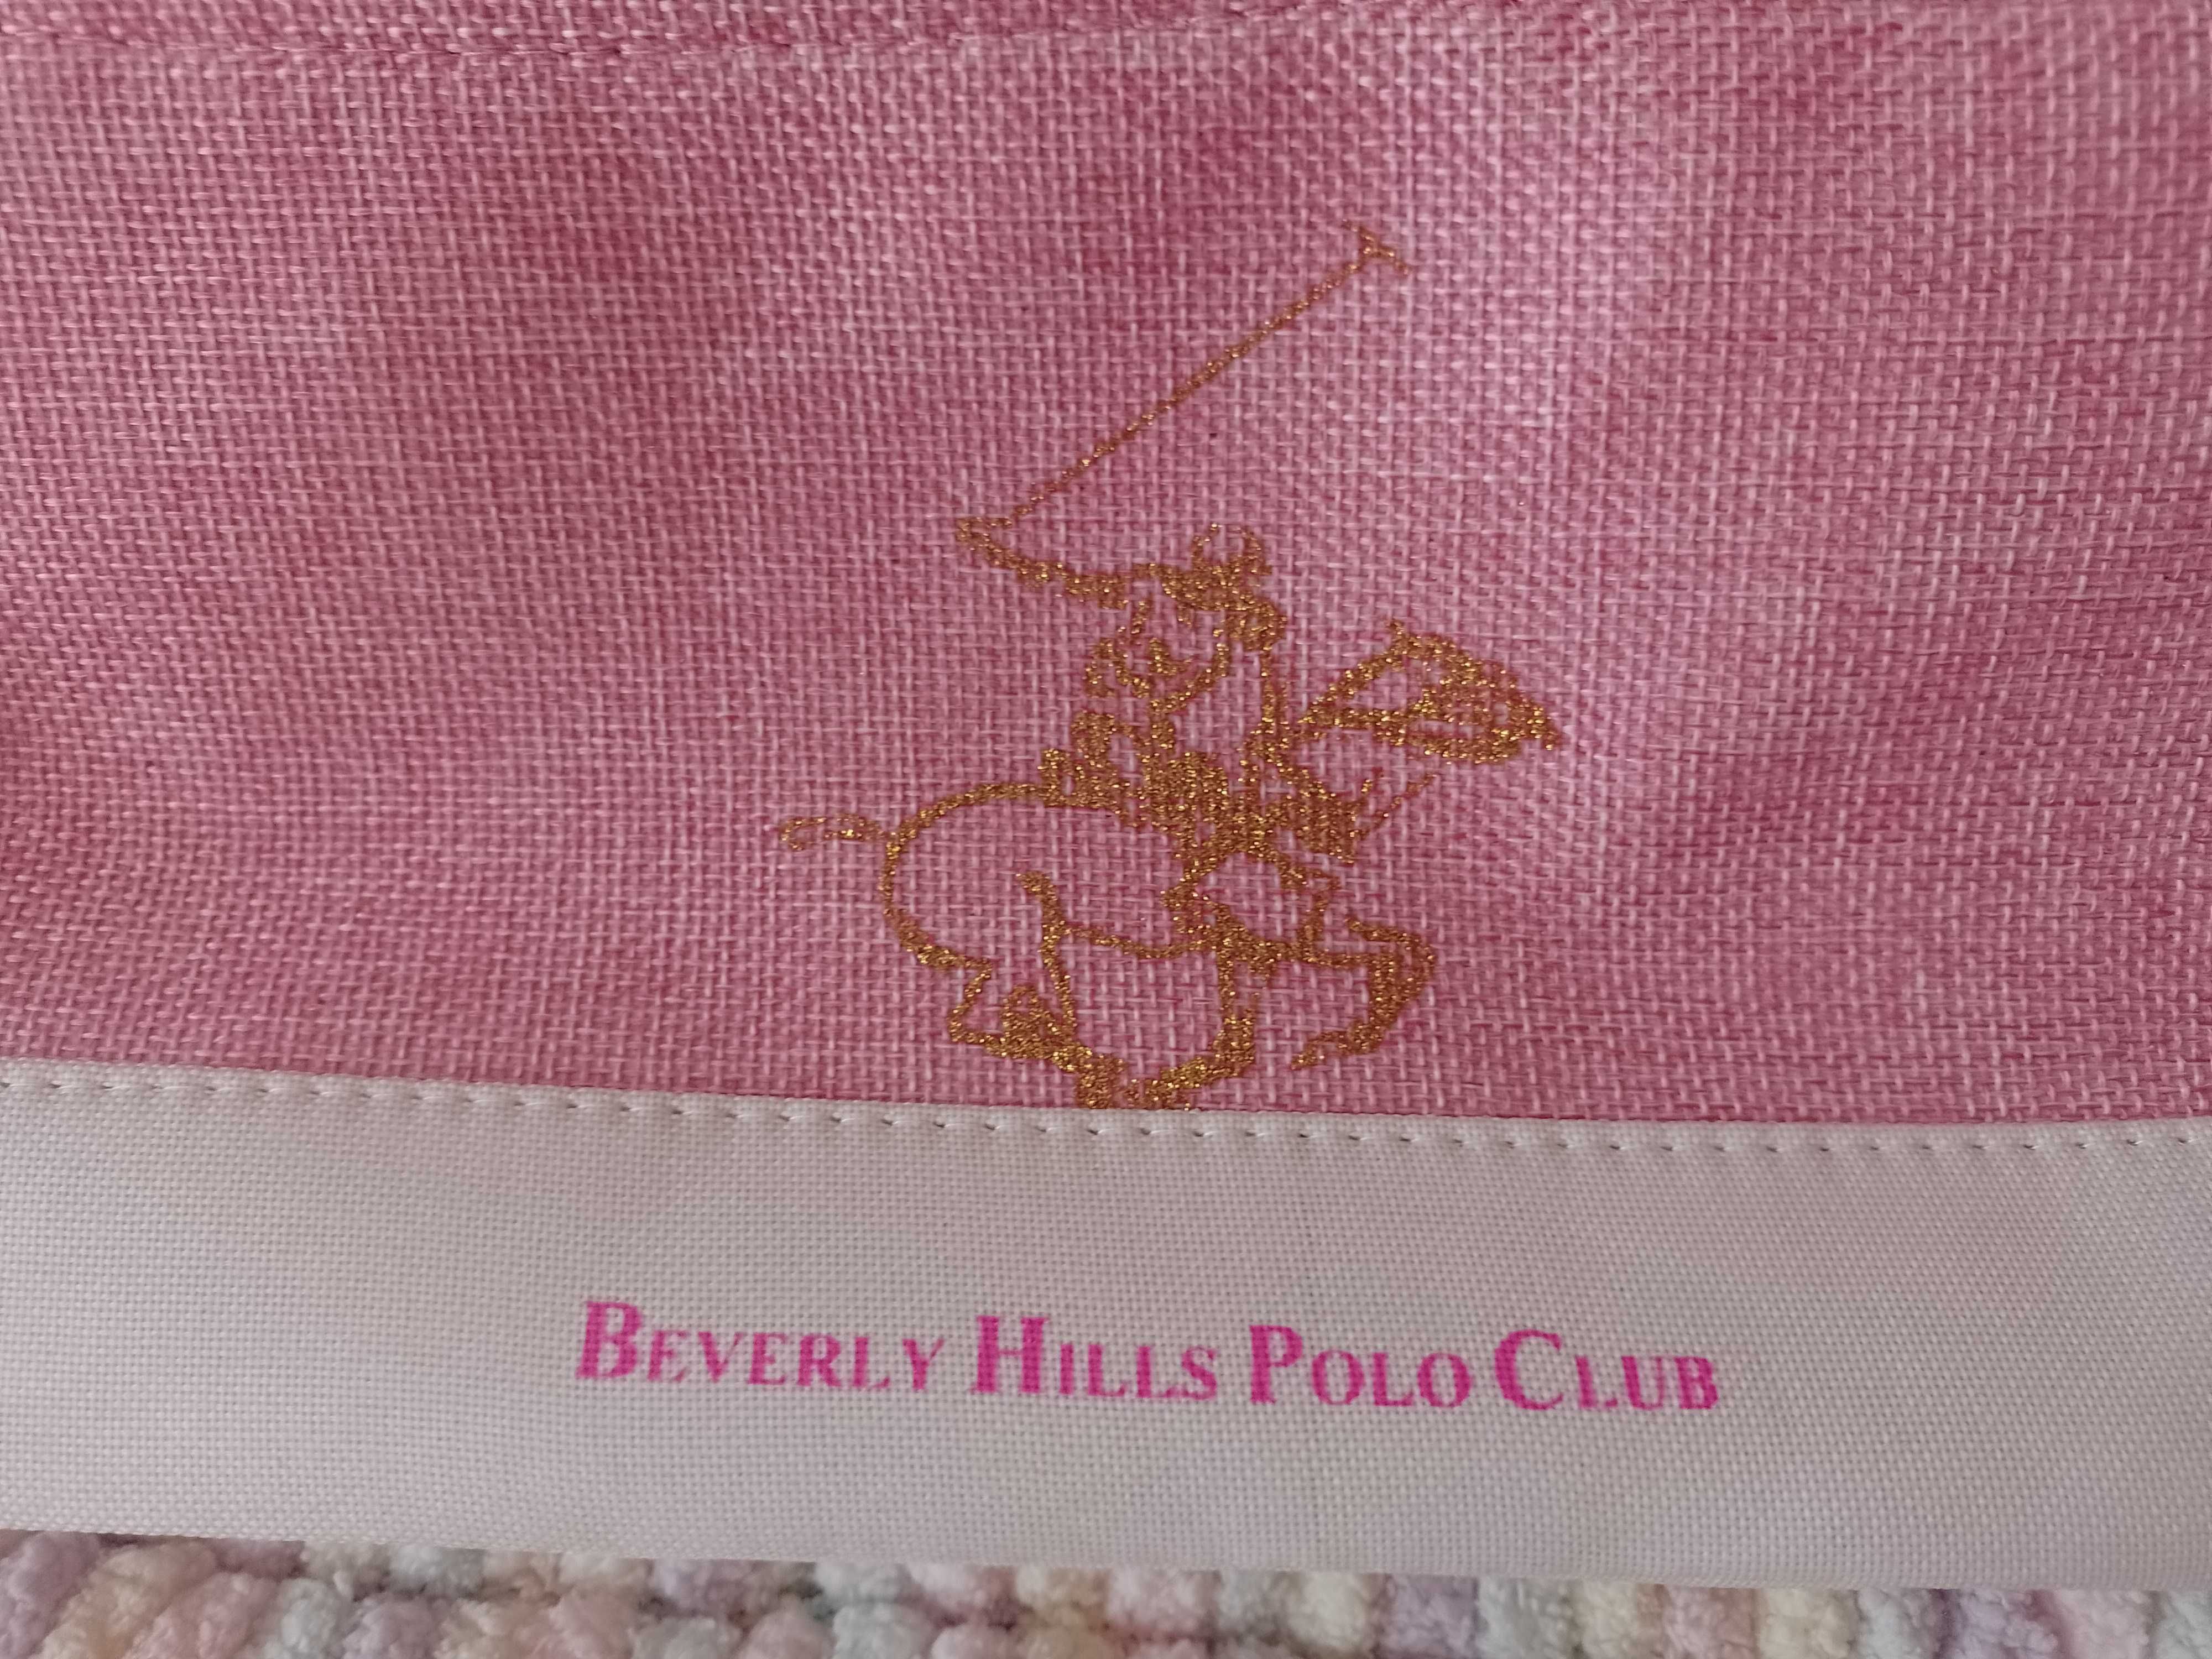 Beverly Hills Polo Club/ Ekskluzywna, różowa kosmetyczka/ NOWA